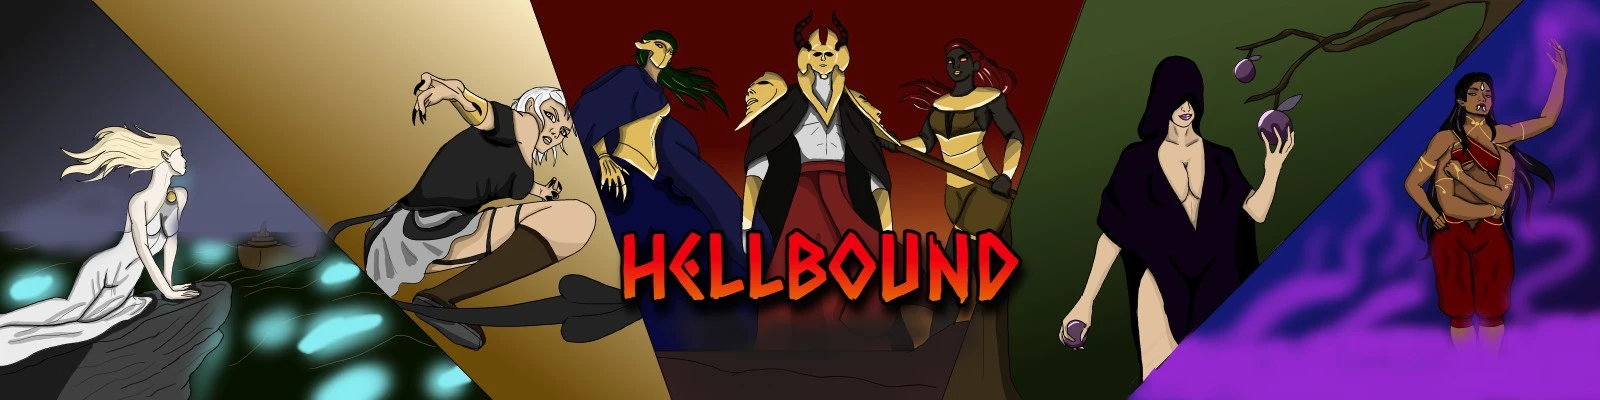 Hellbound [v0.1.0] main image